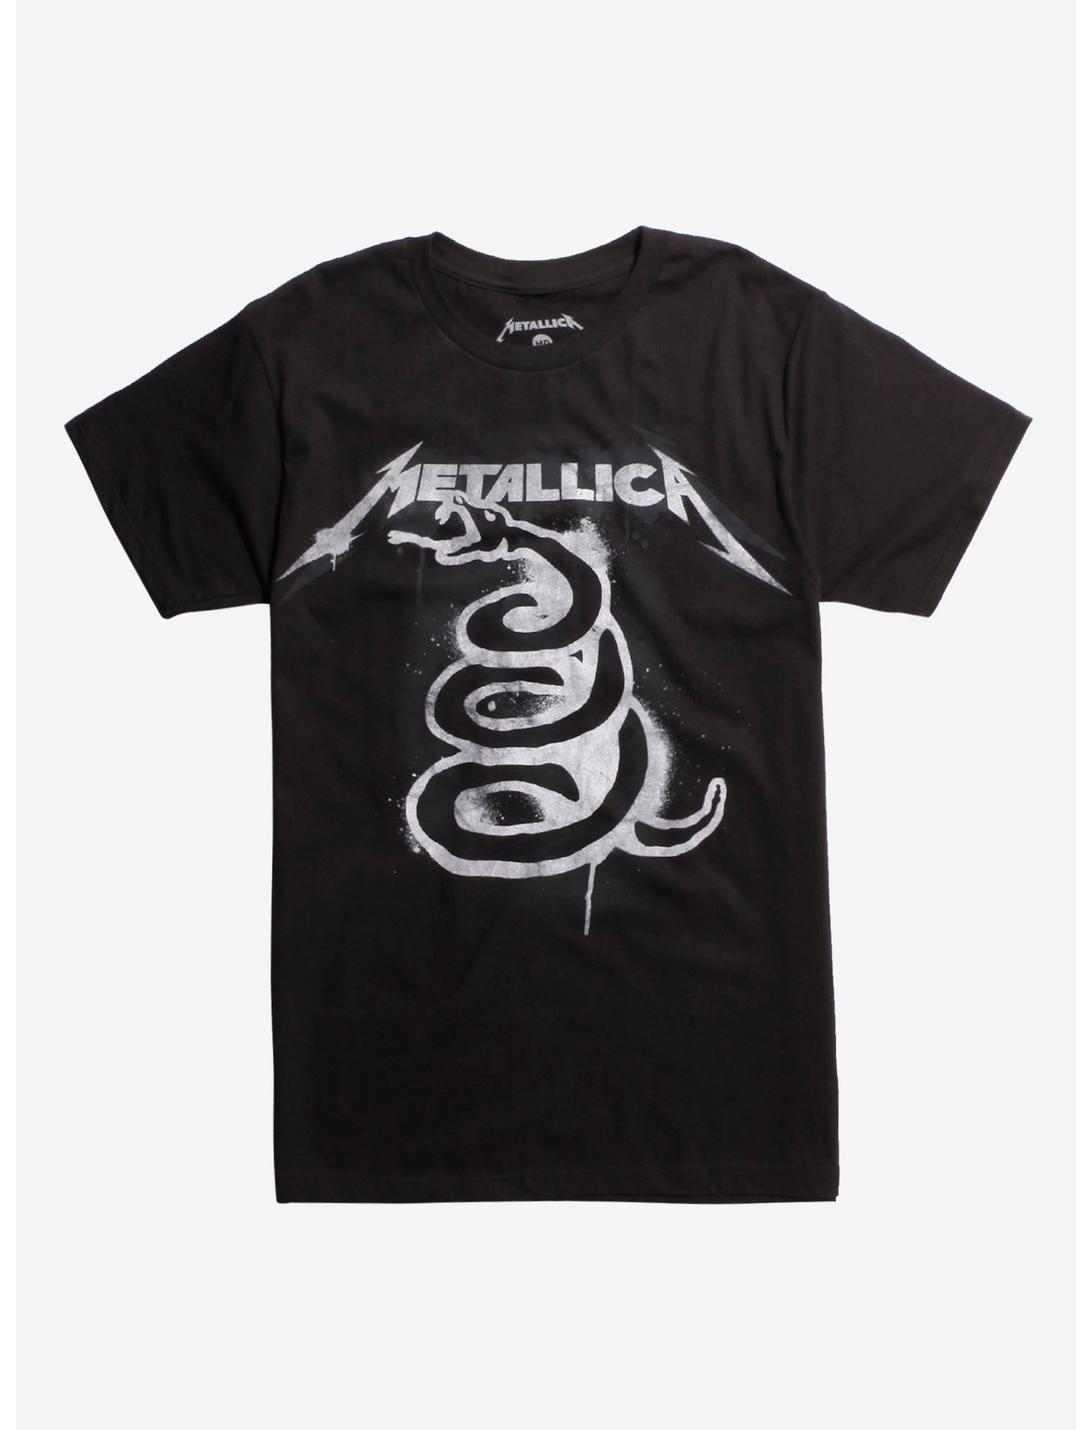 Metallica Black Album Art T-Shirt, BLACK, hi-res